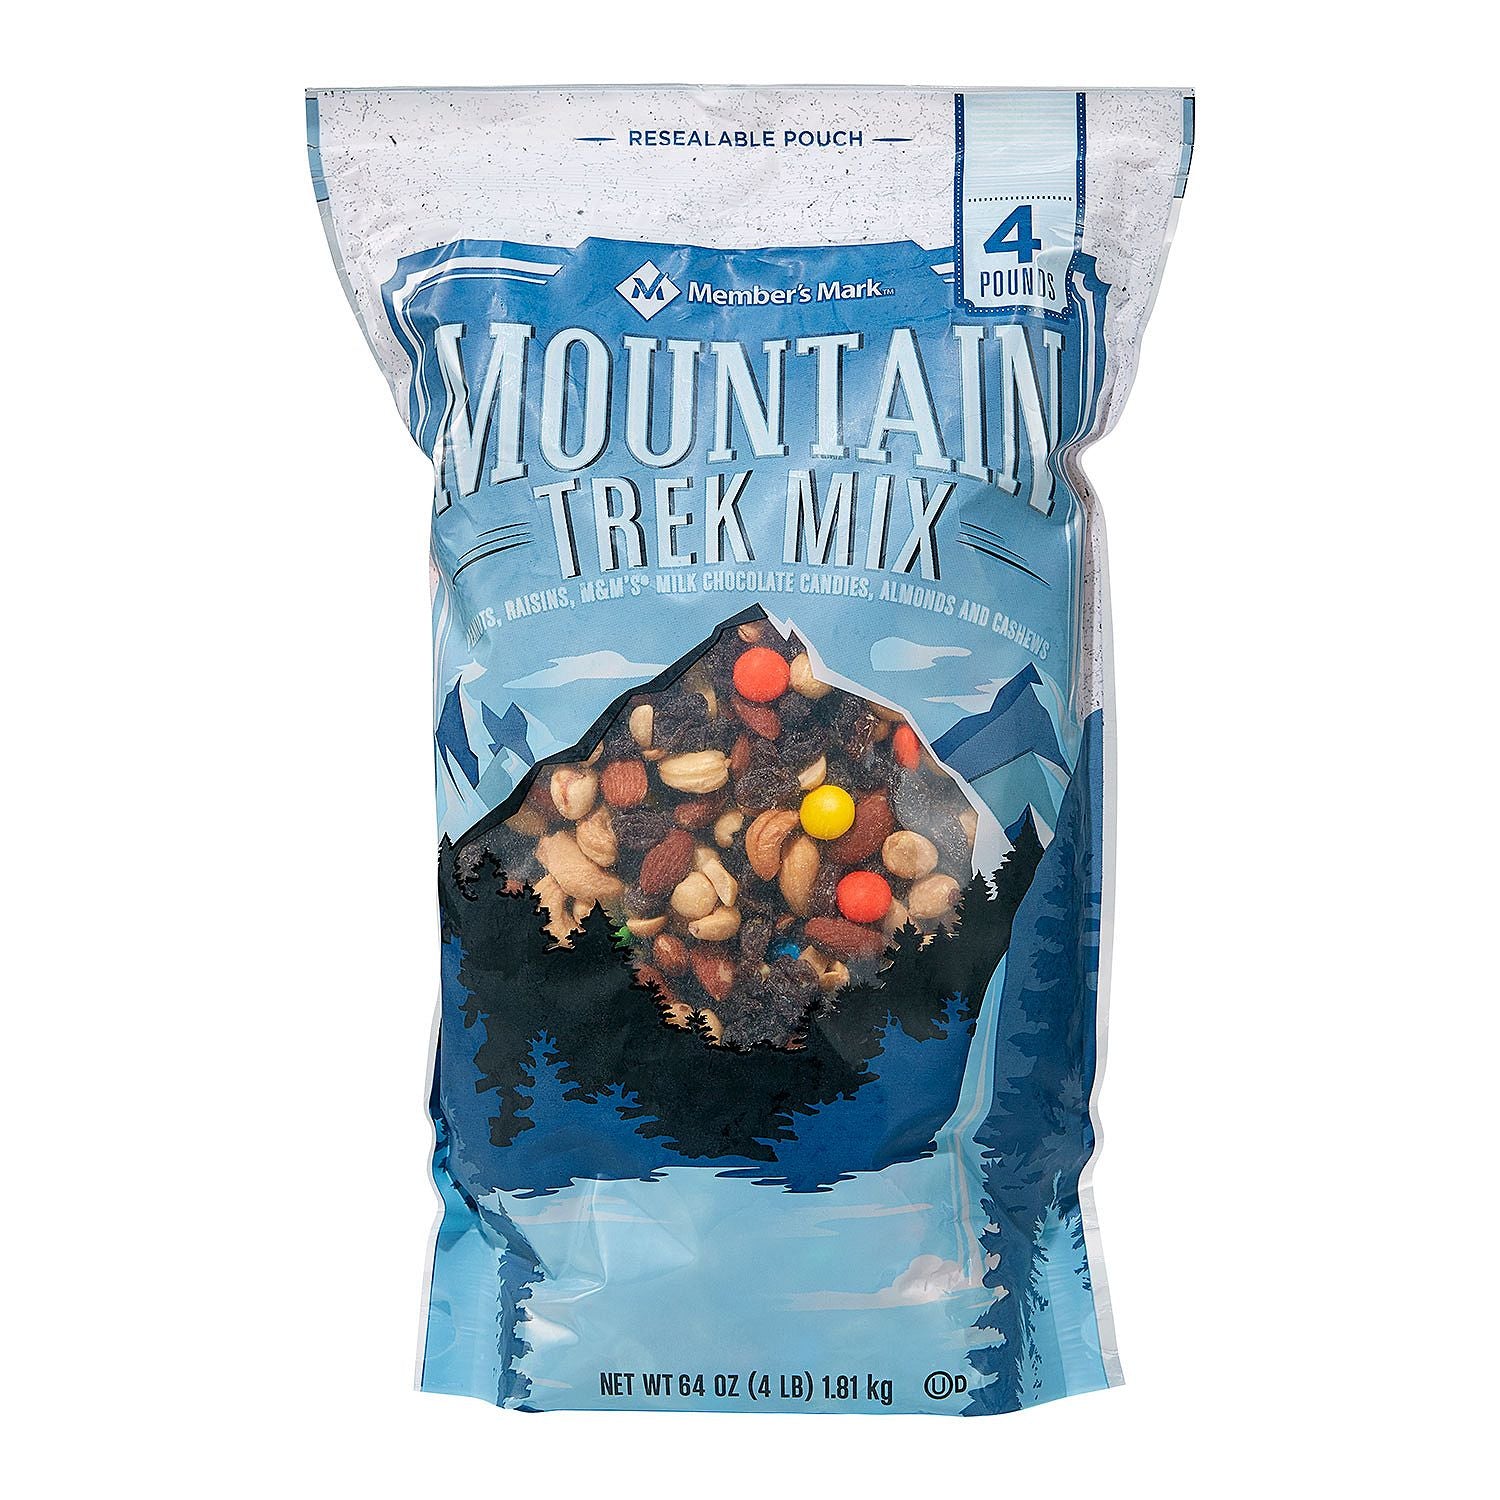 Kirkland Trail Mix with Nuts, M&M's & Raisins, 1.81/4 lbs